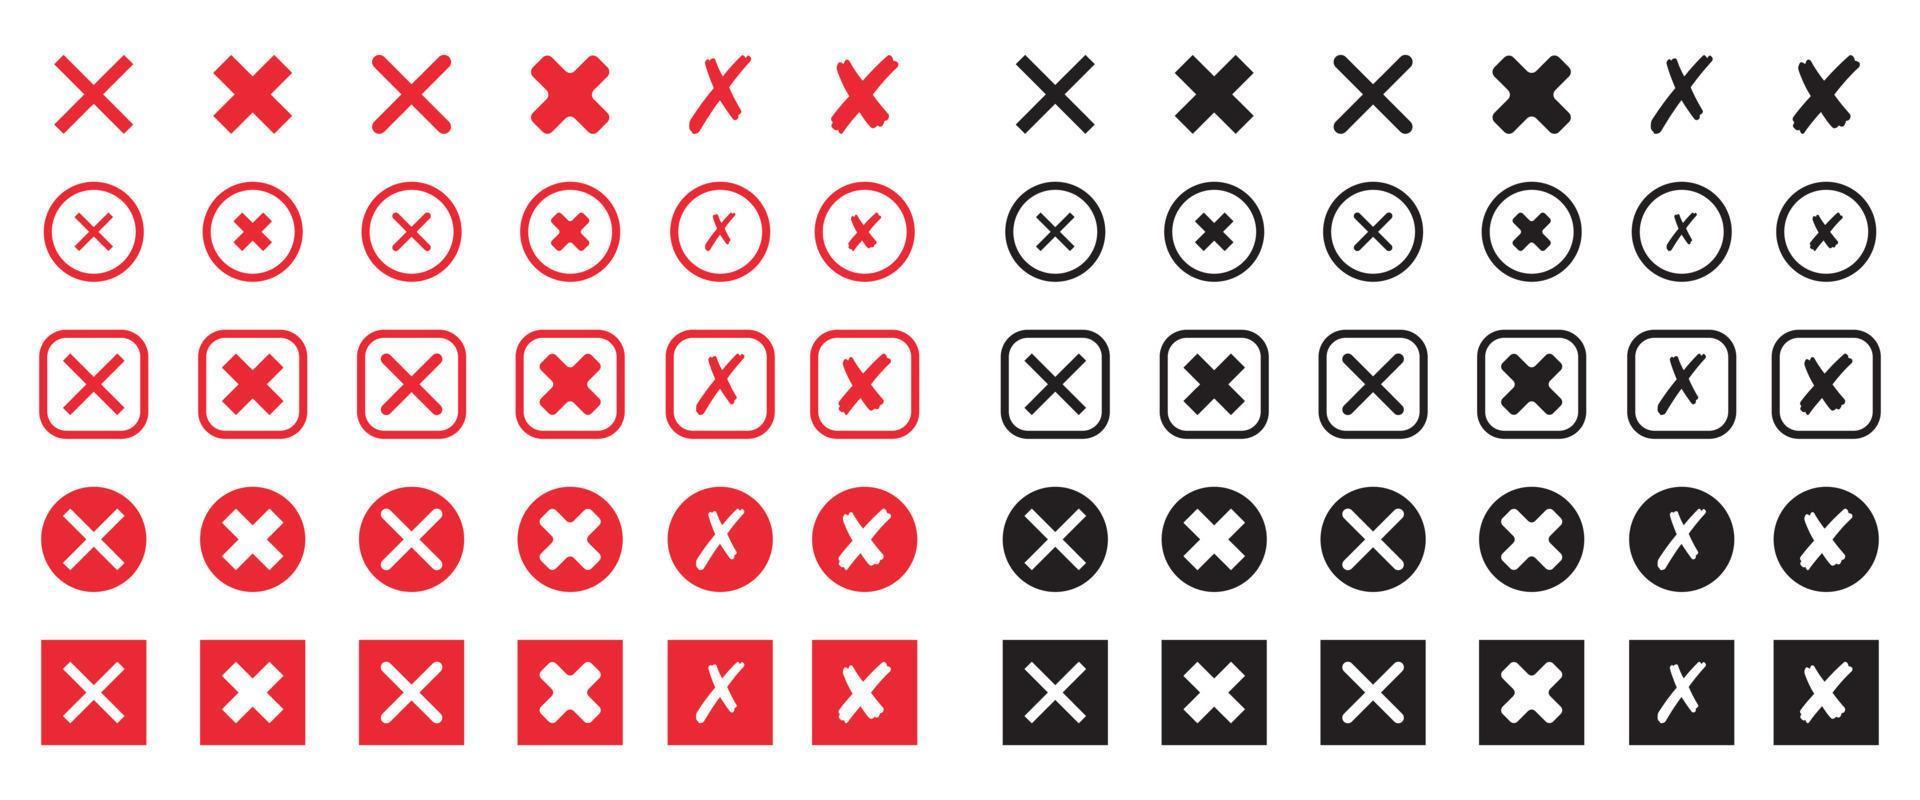 conjunto de icono de cruz roja y negra. símbolo de marca x en estilo plano. vector